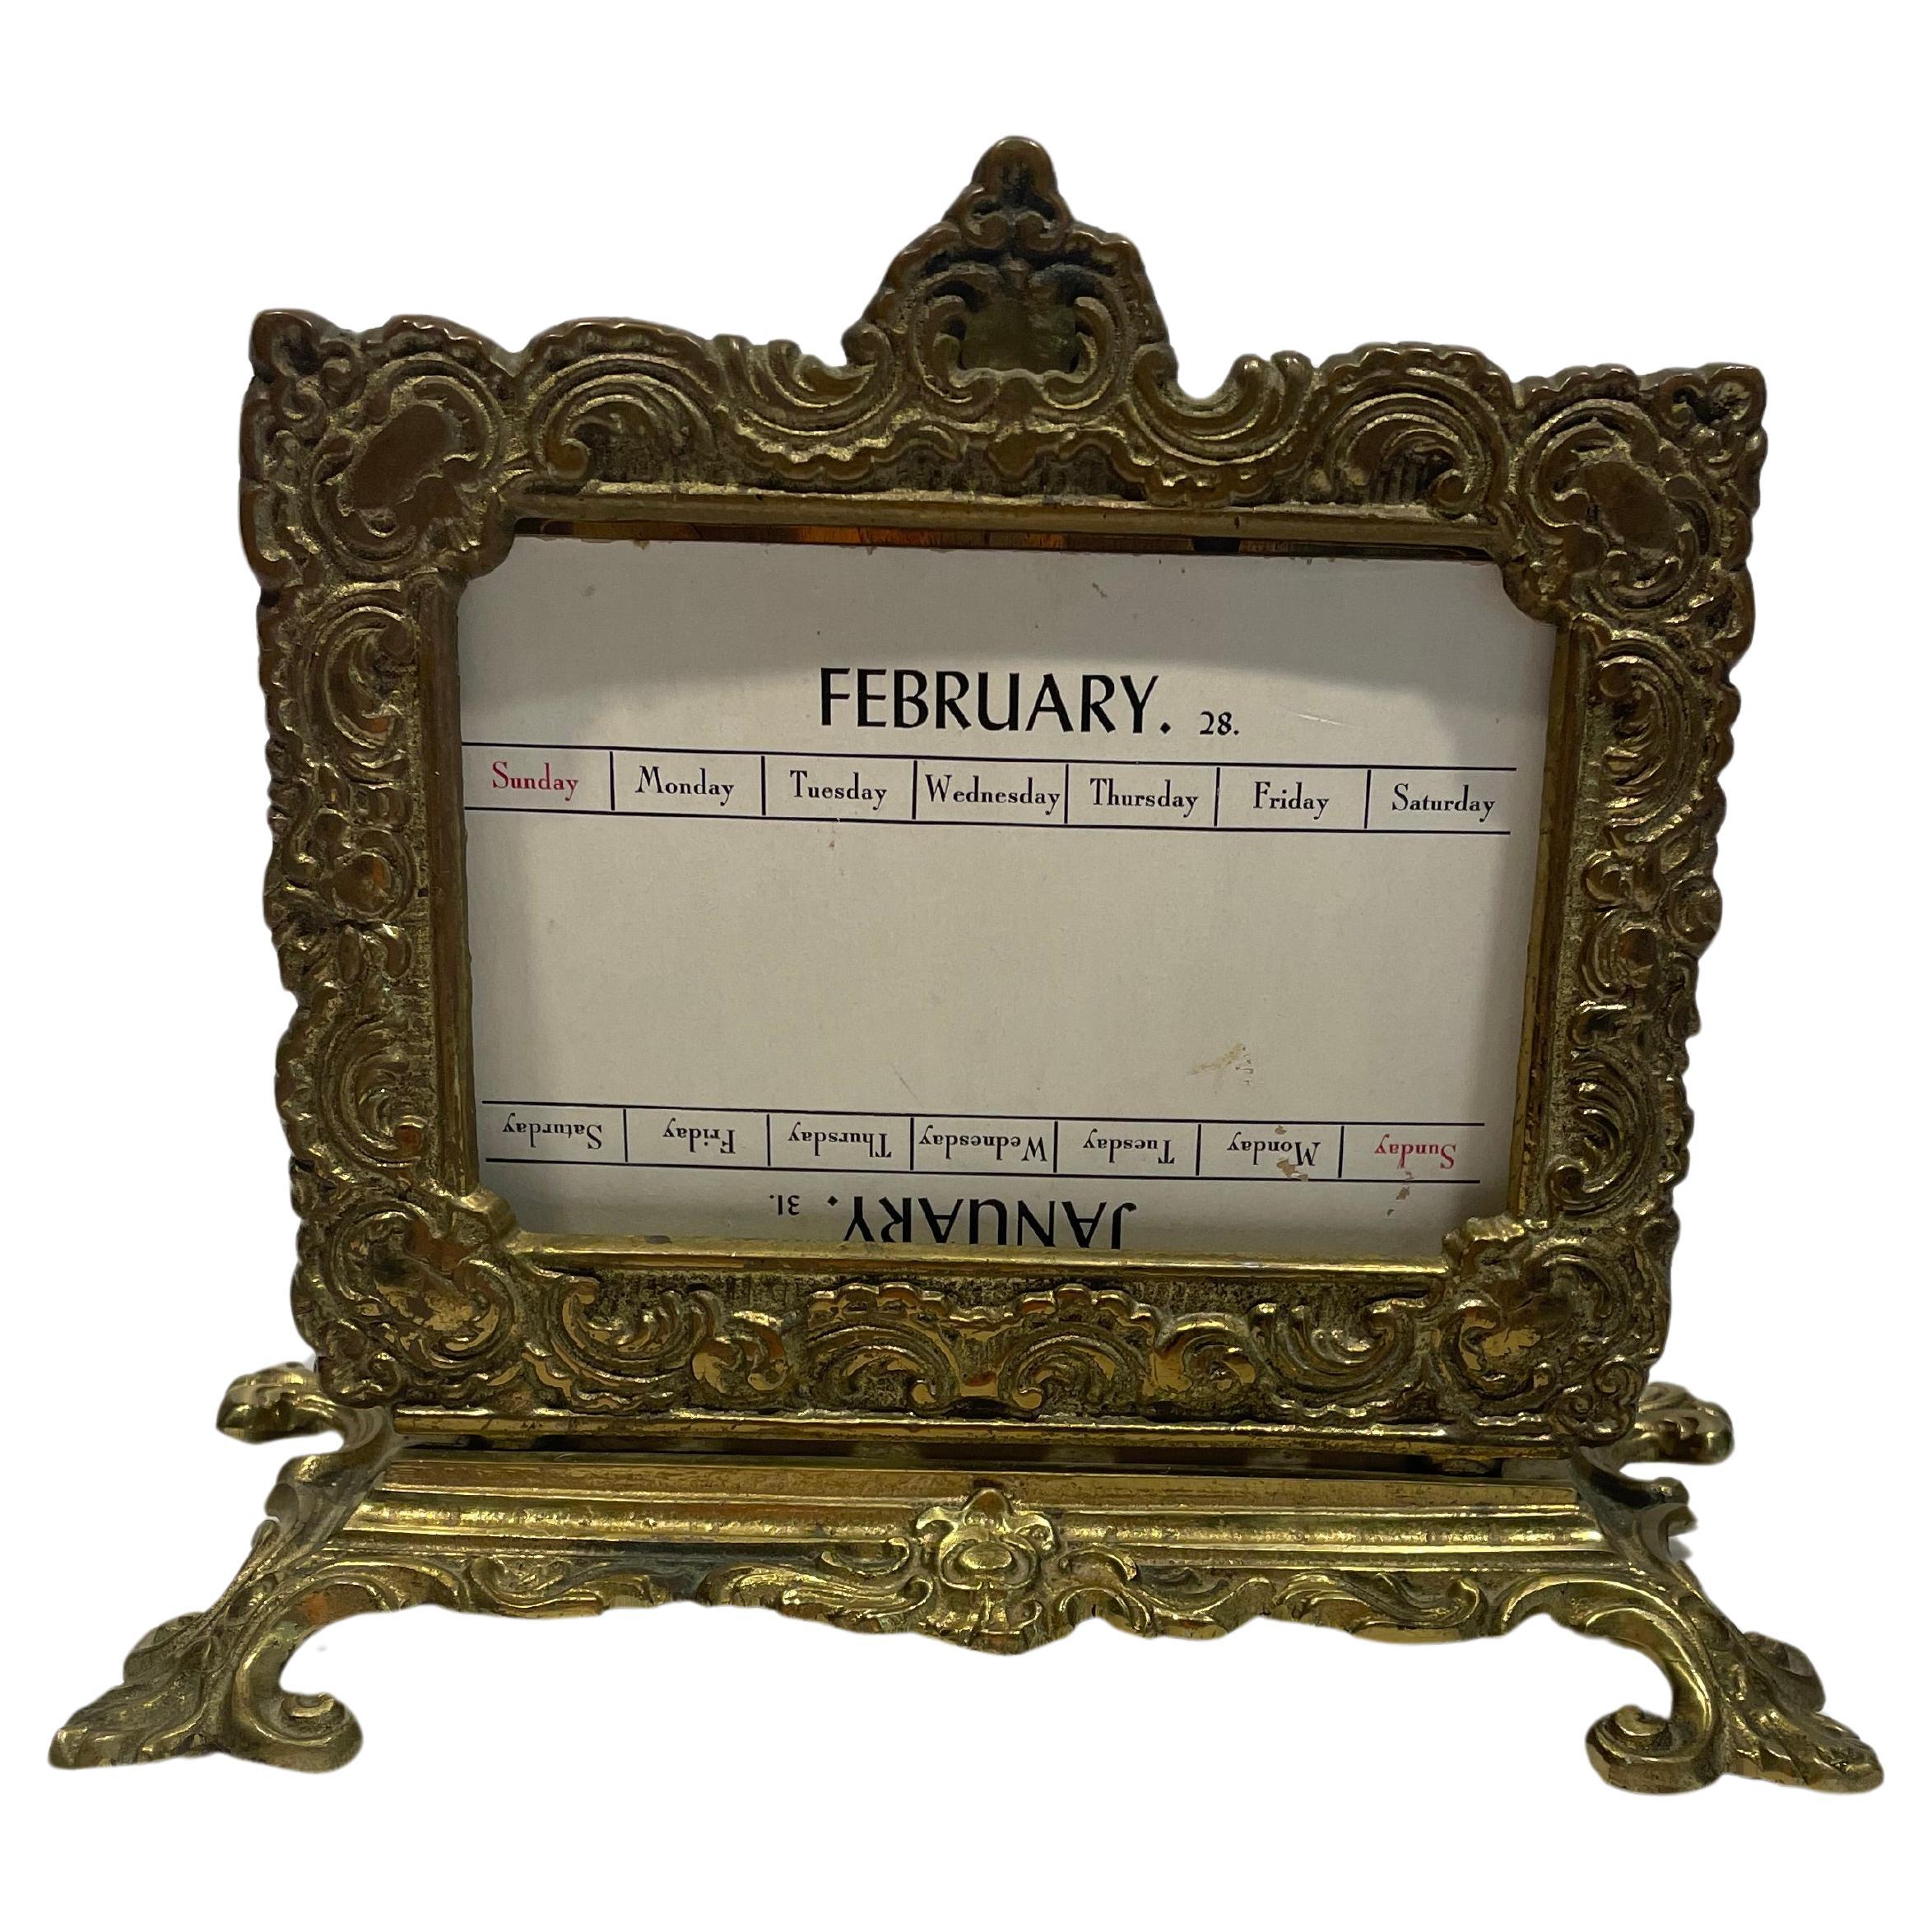 Ein schöner, stattlicher Tischkalender und Briefhalter aus der viktorianischen Zeit. Er ist aus massivem Messing handgeschmiedet,  was man am Gewicht des Stücks spüren kann. Das antike Messing hat eine reiche und glänzende Patina, die das Licht